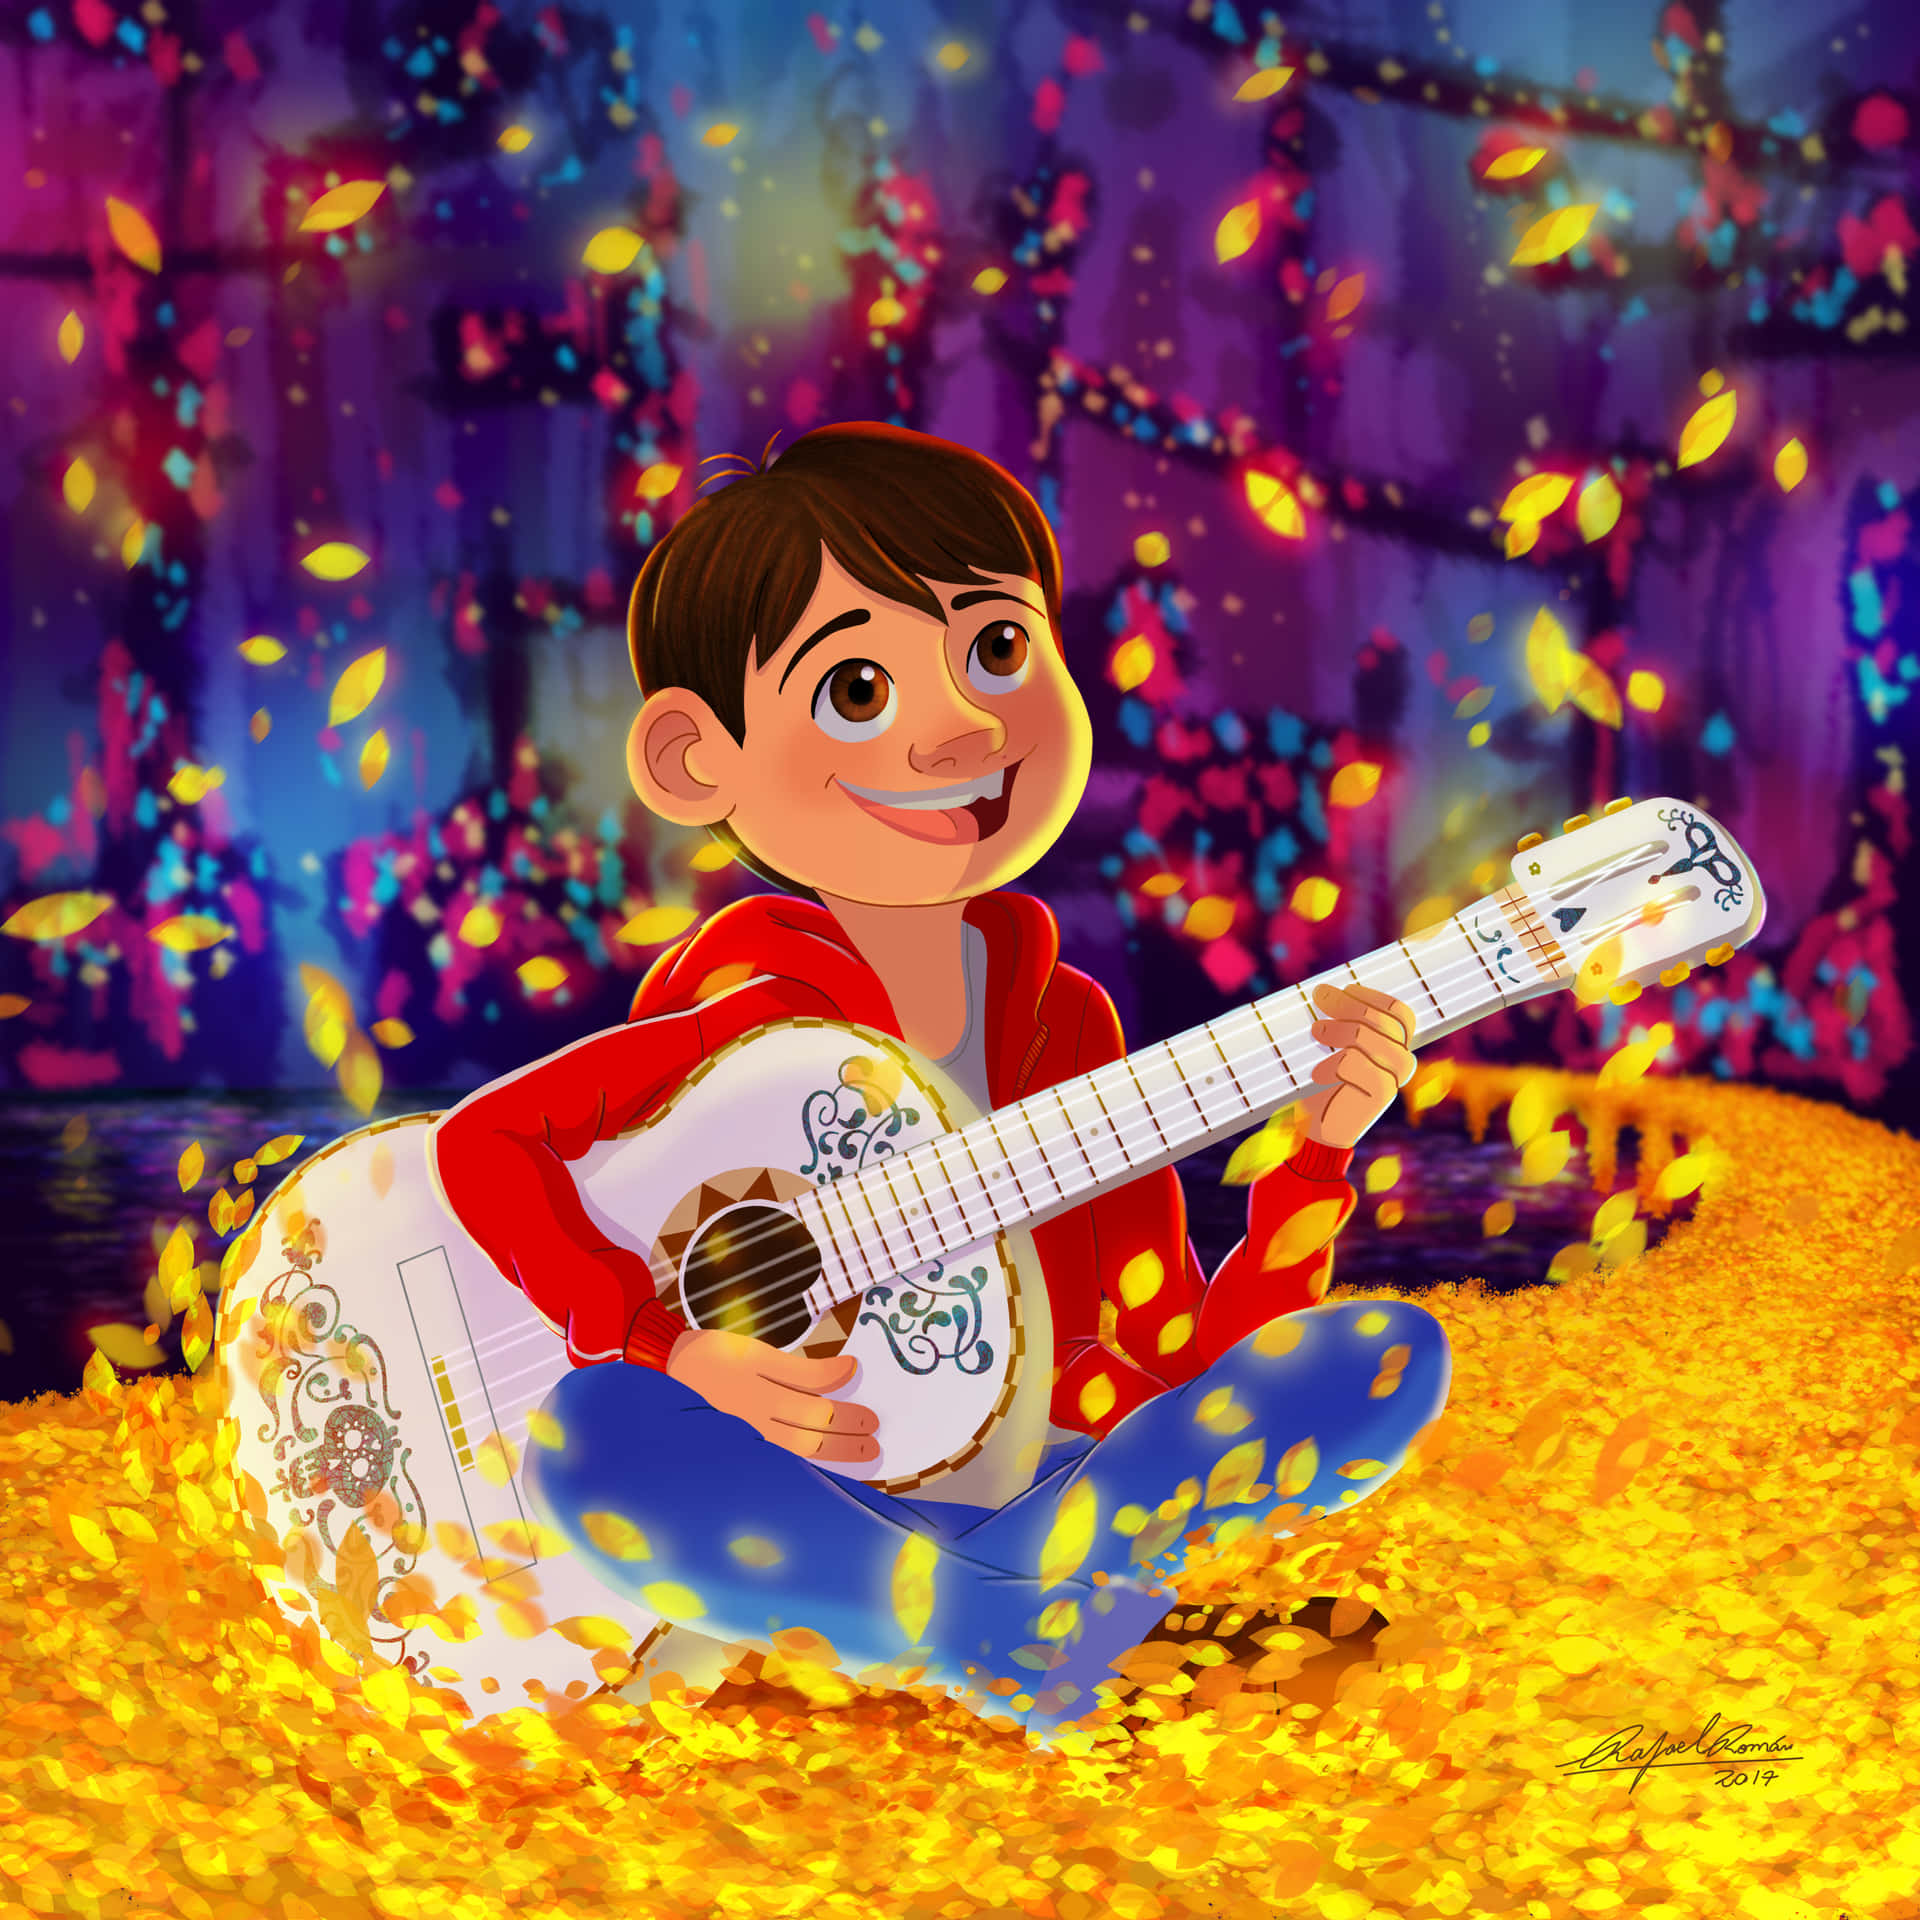 Följmed Miguel På Hans Magiska Resa Till De Dödas Land I Disneys Coco! Wallpaper